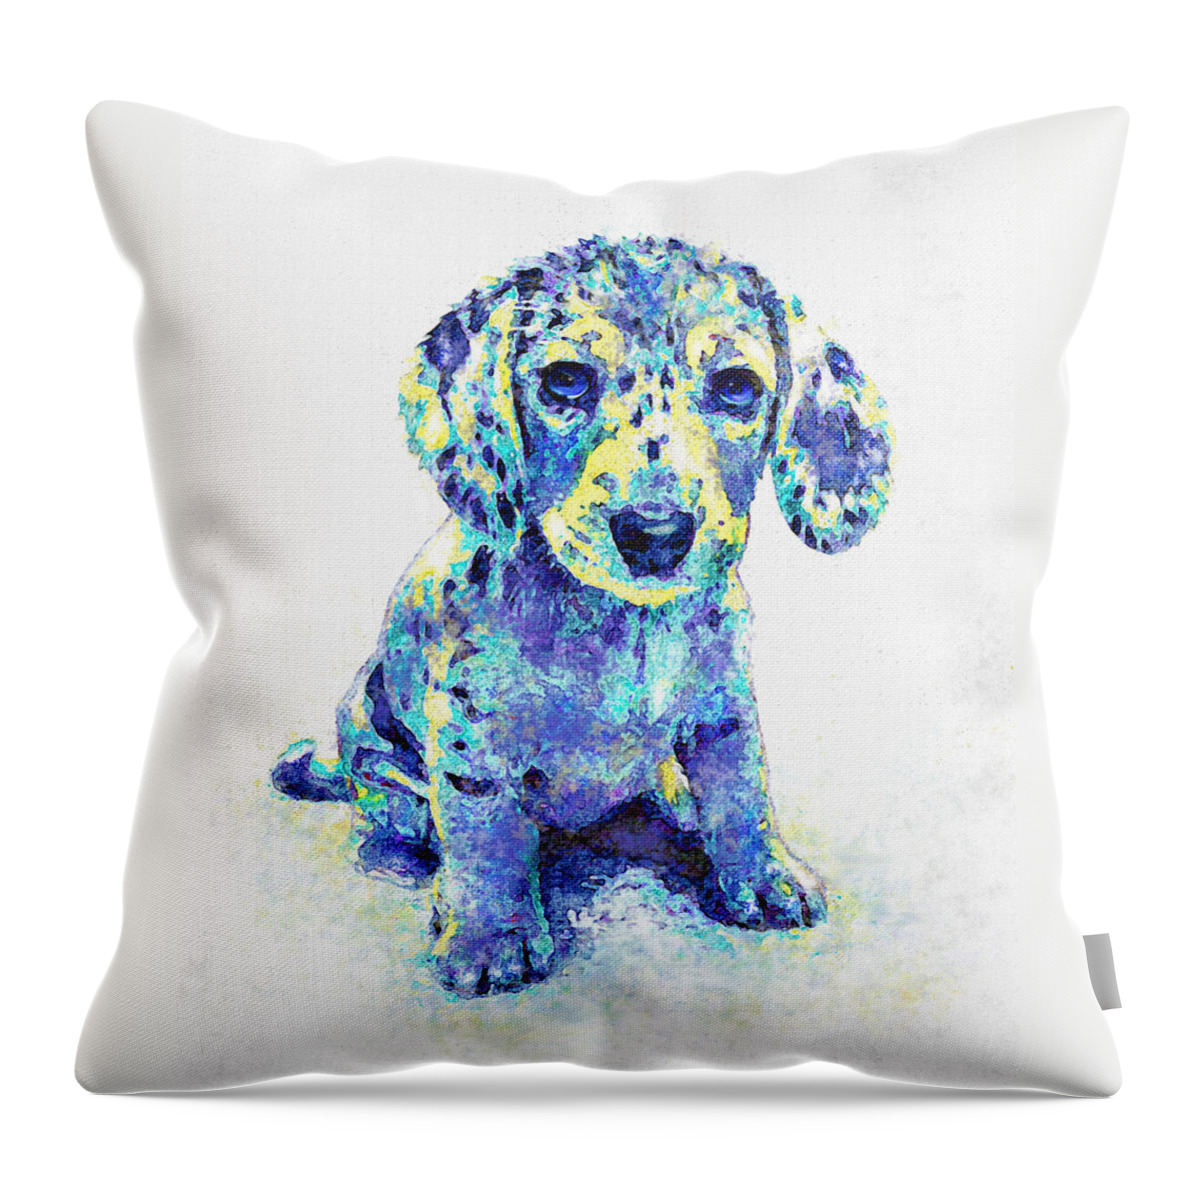 Jane Schnetlage Throw Pillow featuring the digital art Blue Dapple Dachshund Puppy by Jane Schnetlage